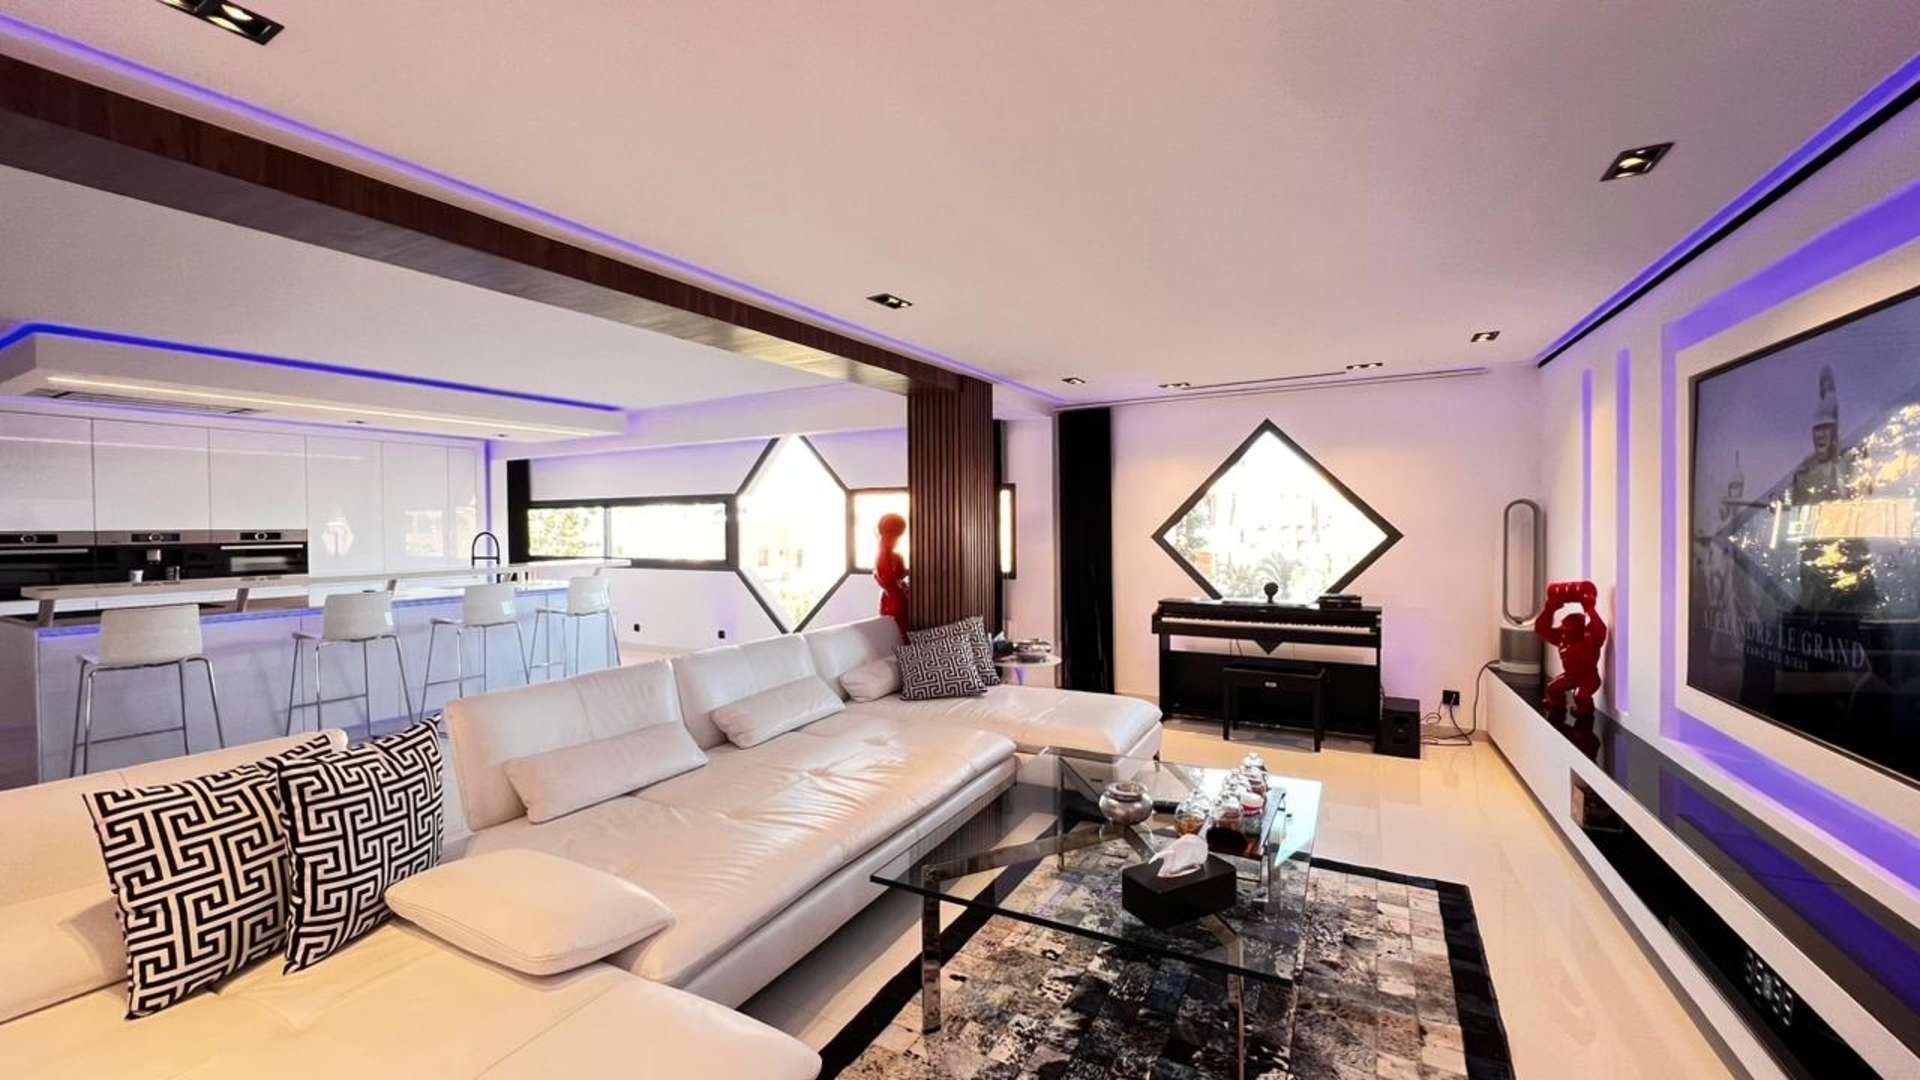 Vente,Appartement,À vendre : Appartement de luxe de 130 m² situé dans le prestigieux quartier de l'Hivernage à Marrakech,Marrakech,Hivernage